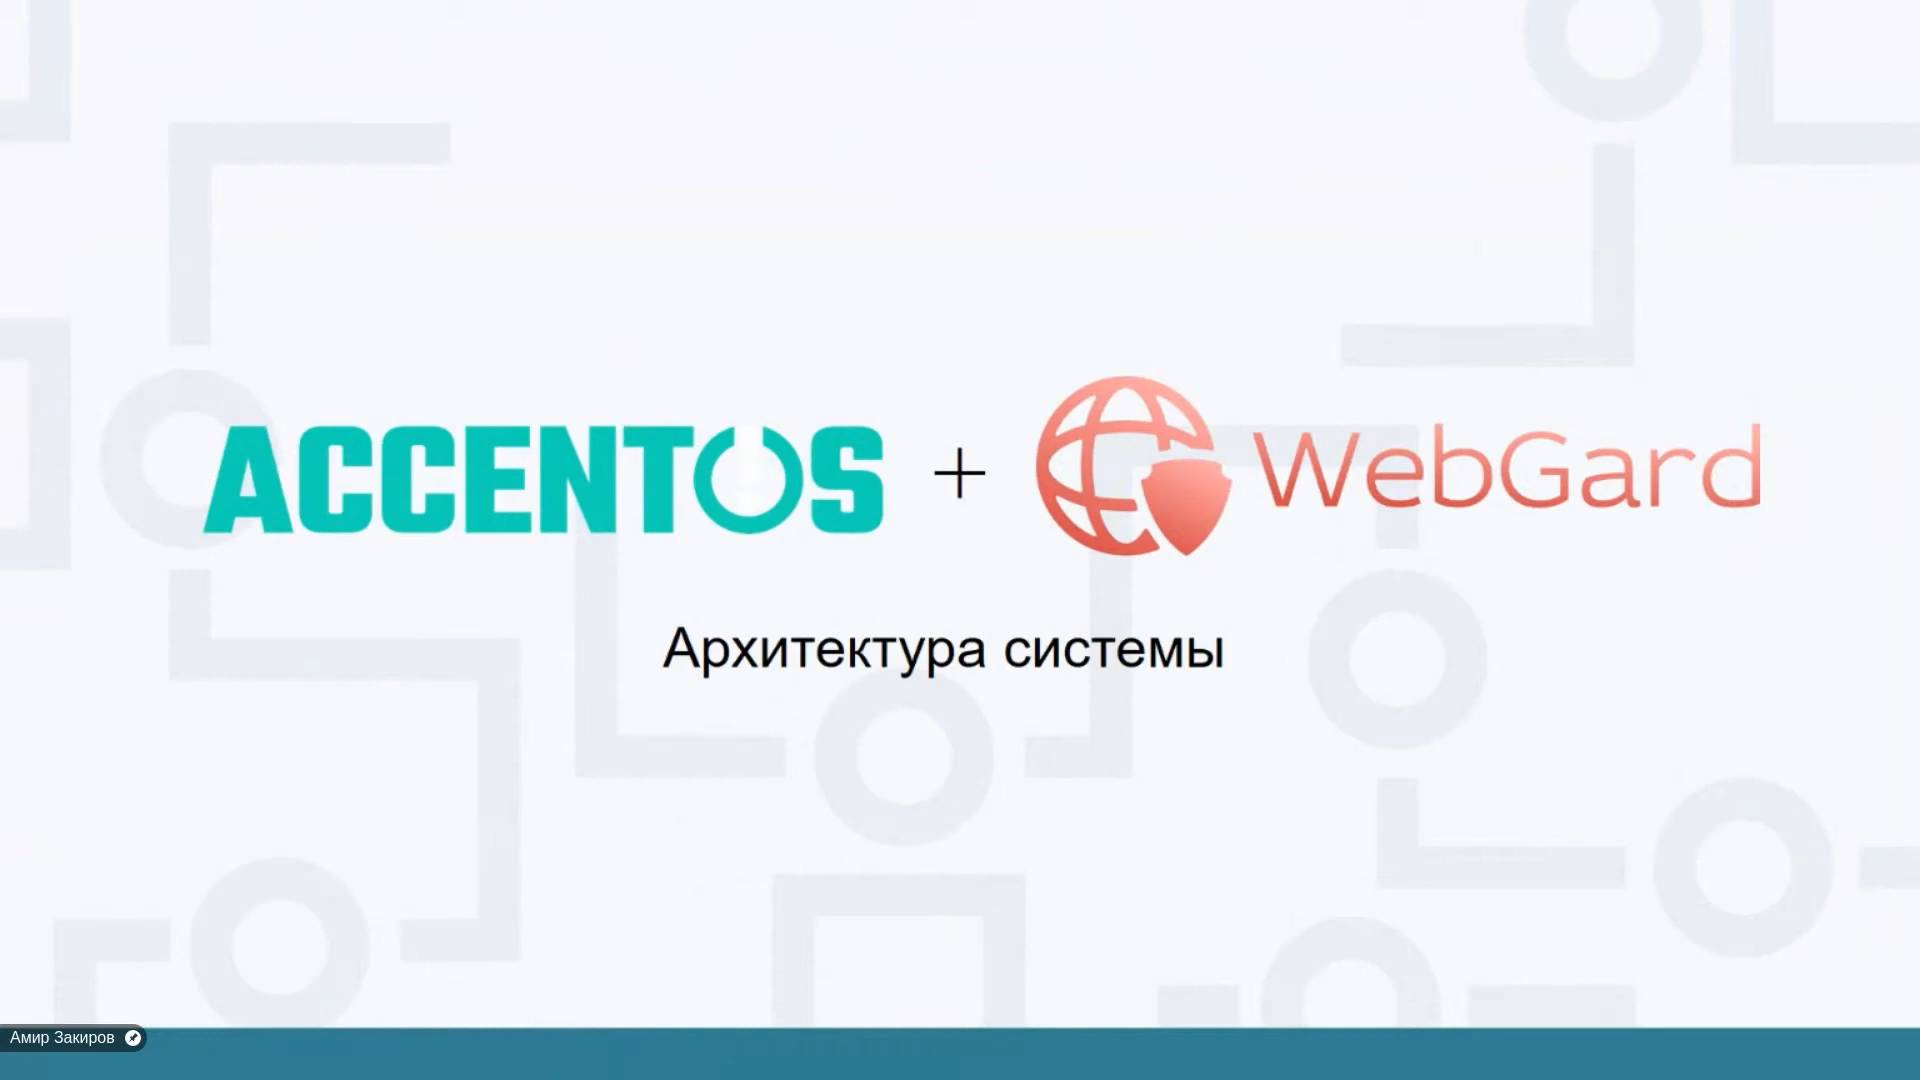 Архитектура взаимодействия систем WebGard 2.0 и AccentOS